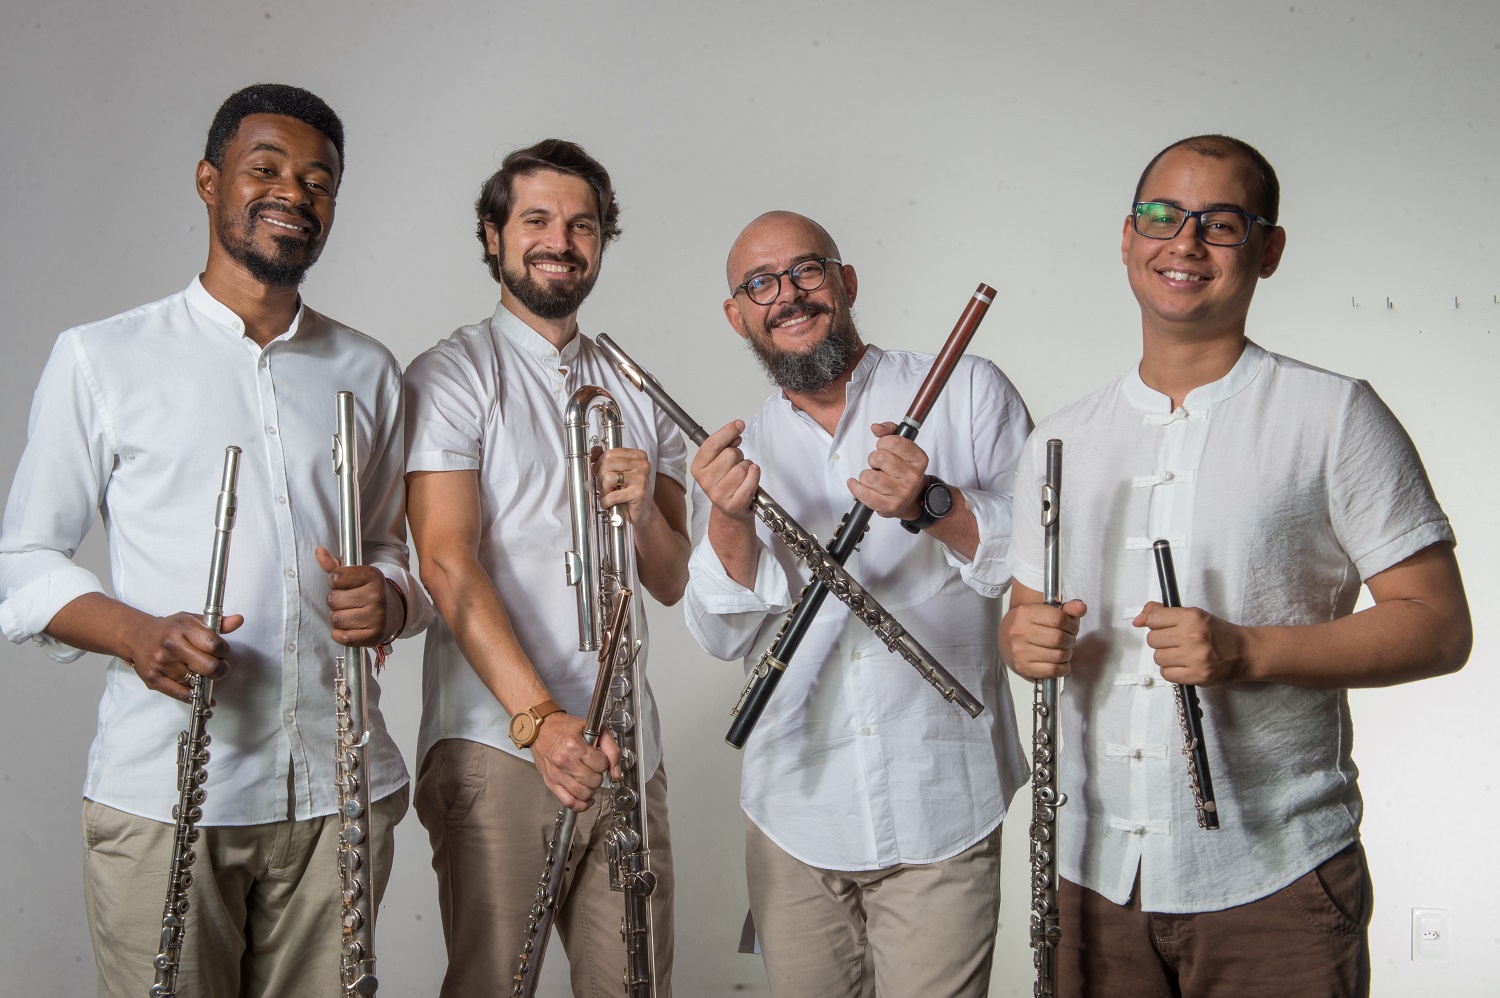 Projeto executa peças musicais, incluindo composições inéditas feitas para o conjunto. (fotos: Quarteto de Flautas da Bahia)